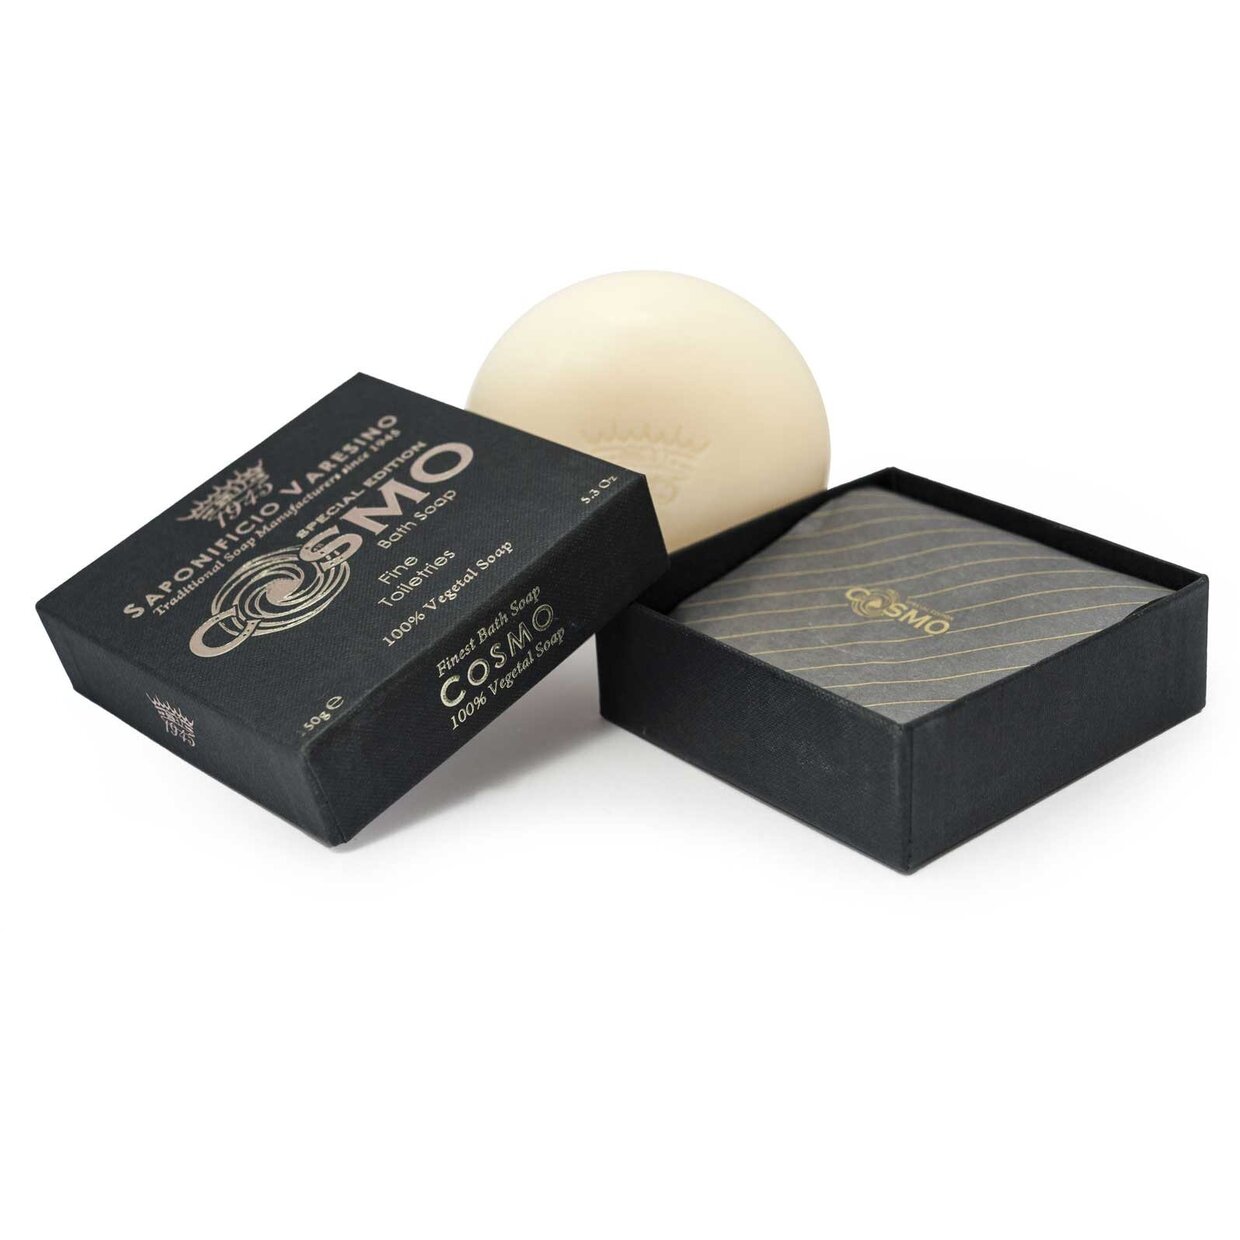 Saponificio Varesino 150g Cosmo Bath soap 